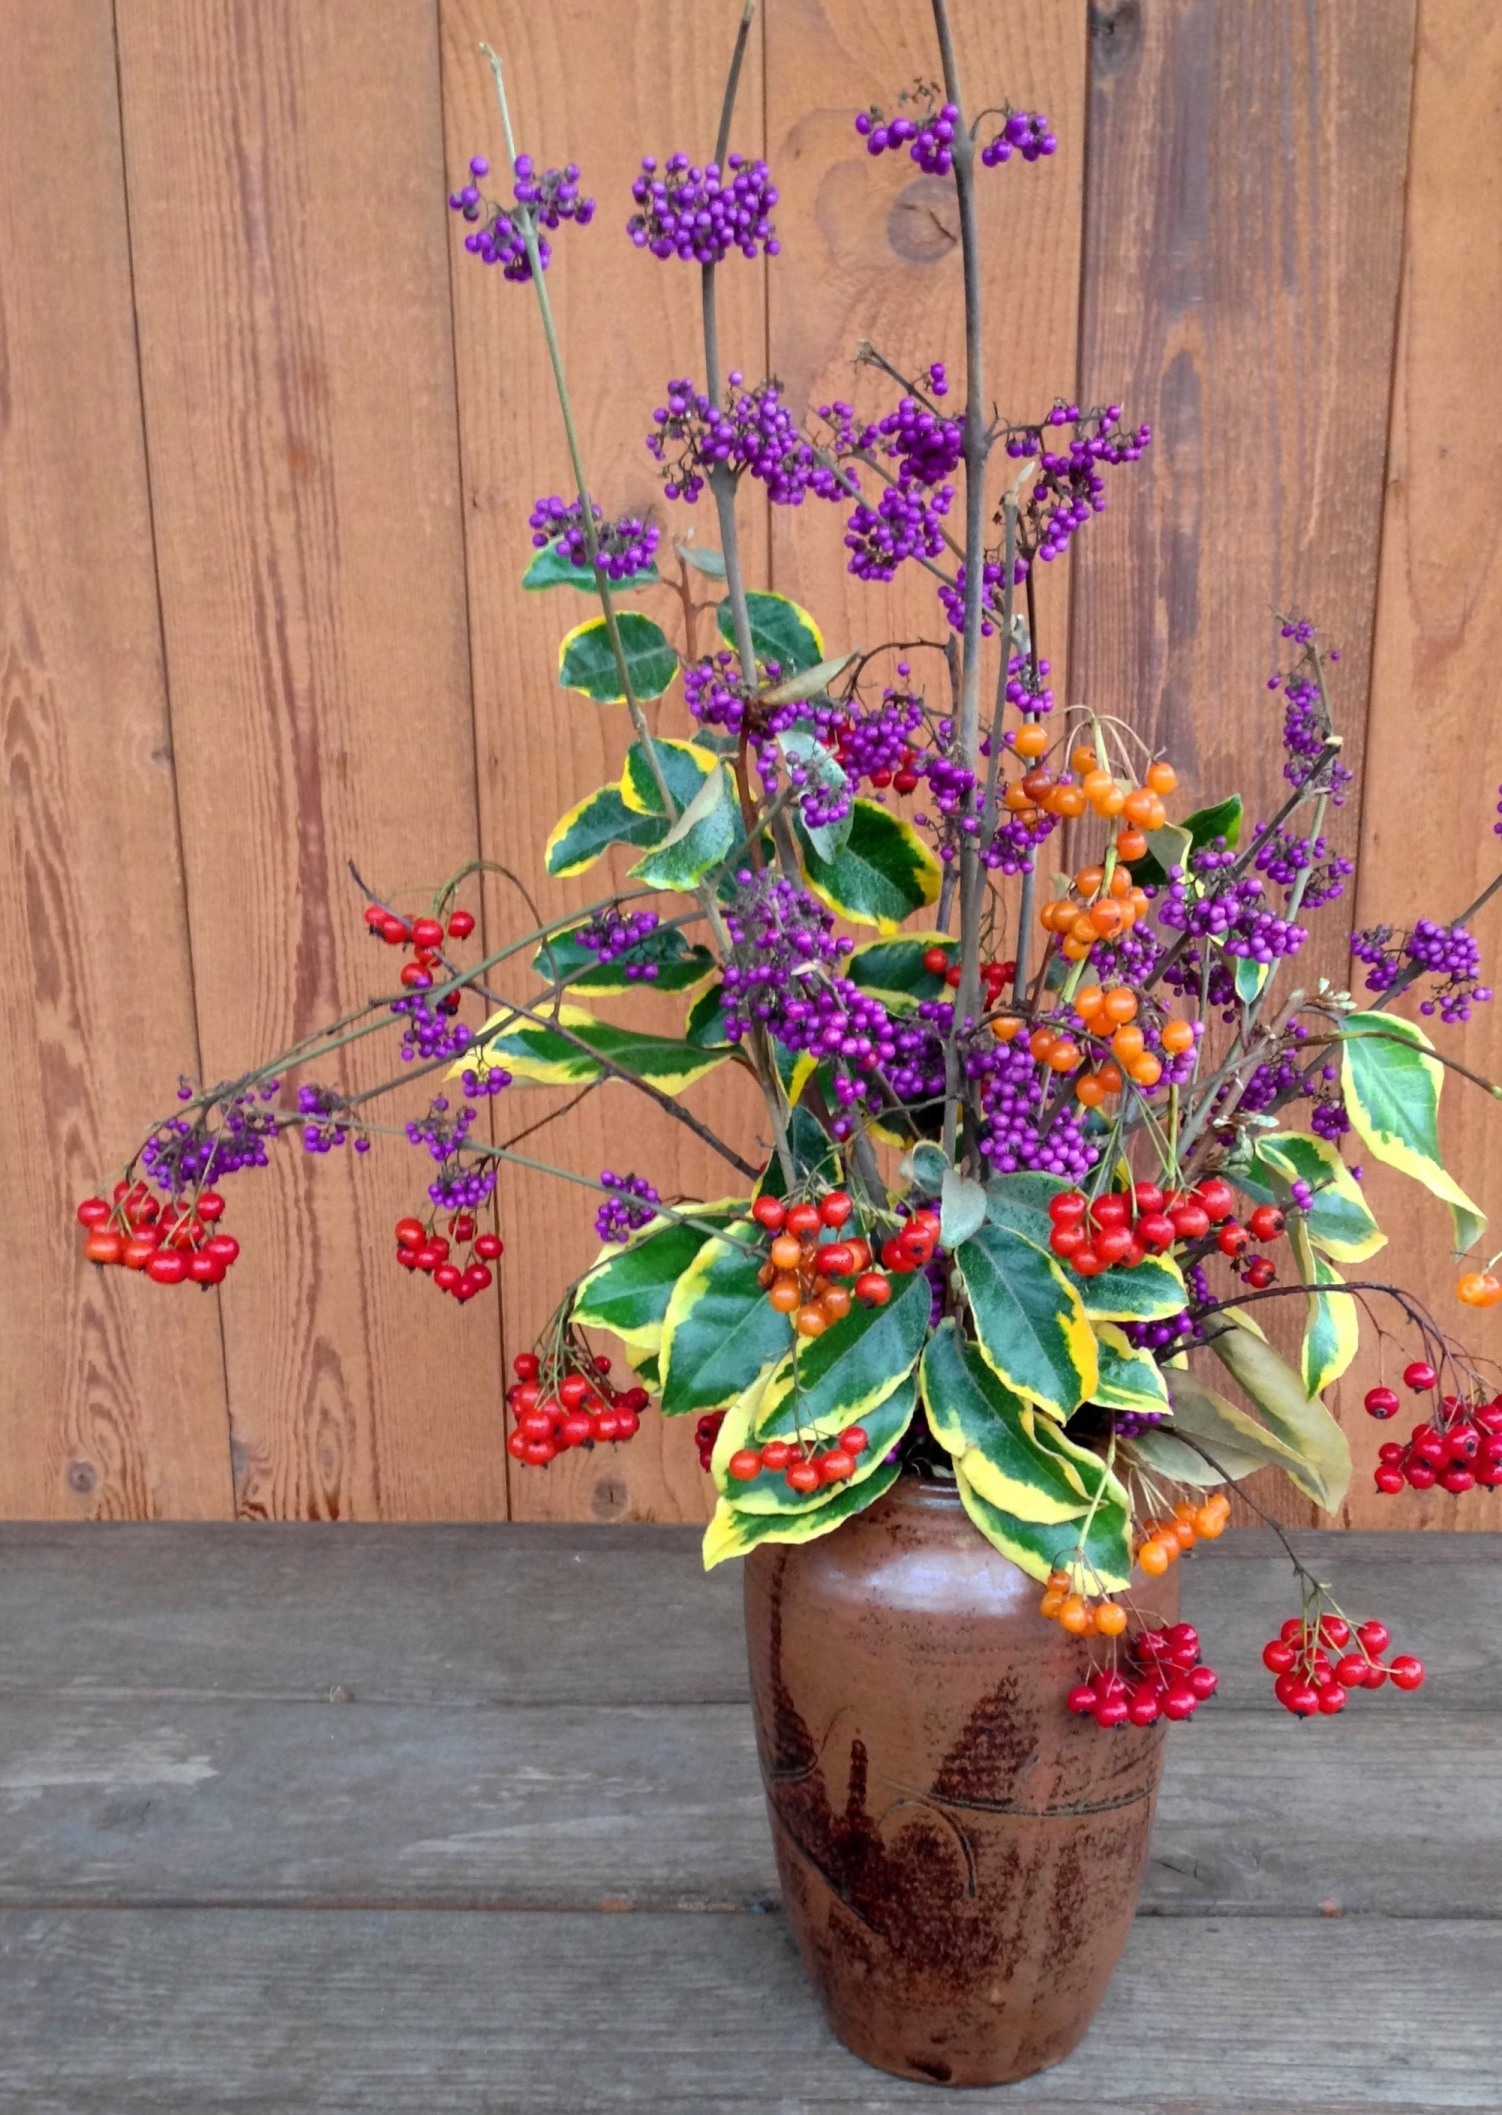 秋季花瓶:红色、橙色和黄色的温暖搭配，配上一些凉爽的紫色。都是我院子里秋天修剪的枝条。